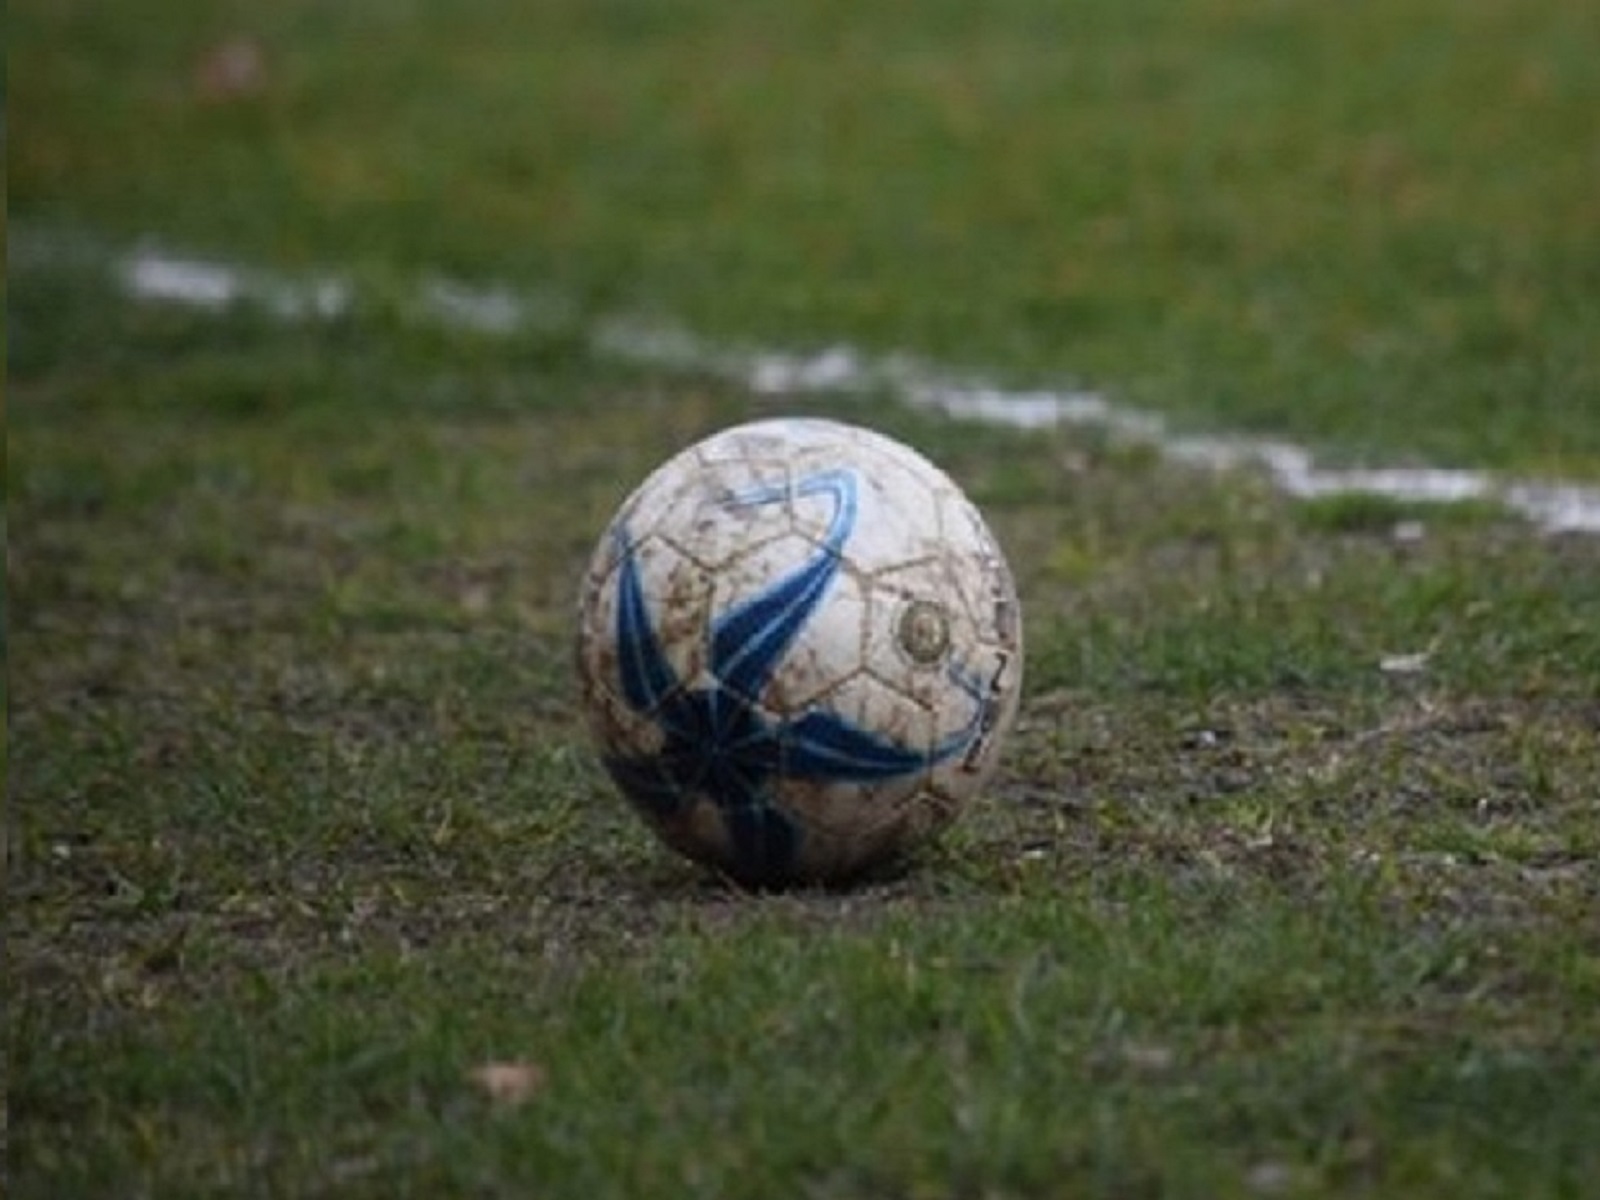 Cambios: Por el superclásico del domingo hay encuentros reprogramados en la Liga Balcarceña